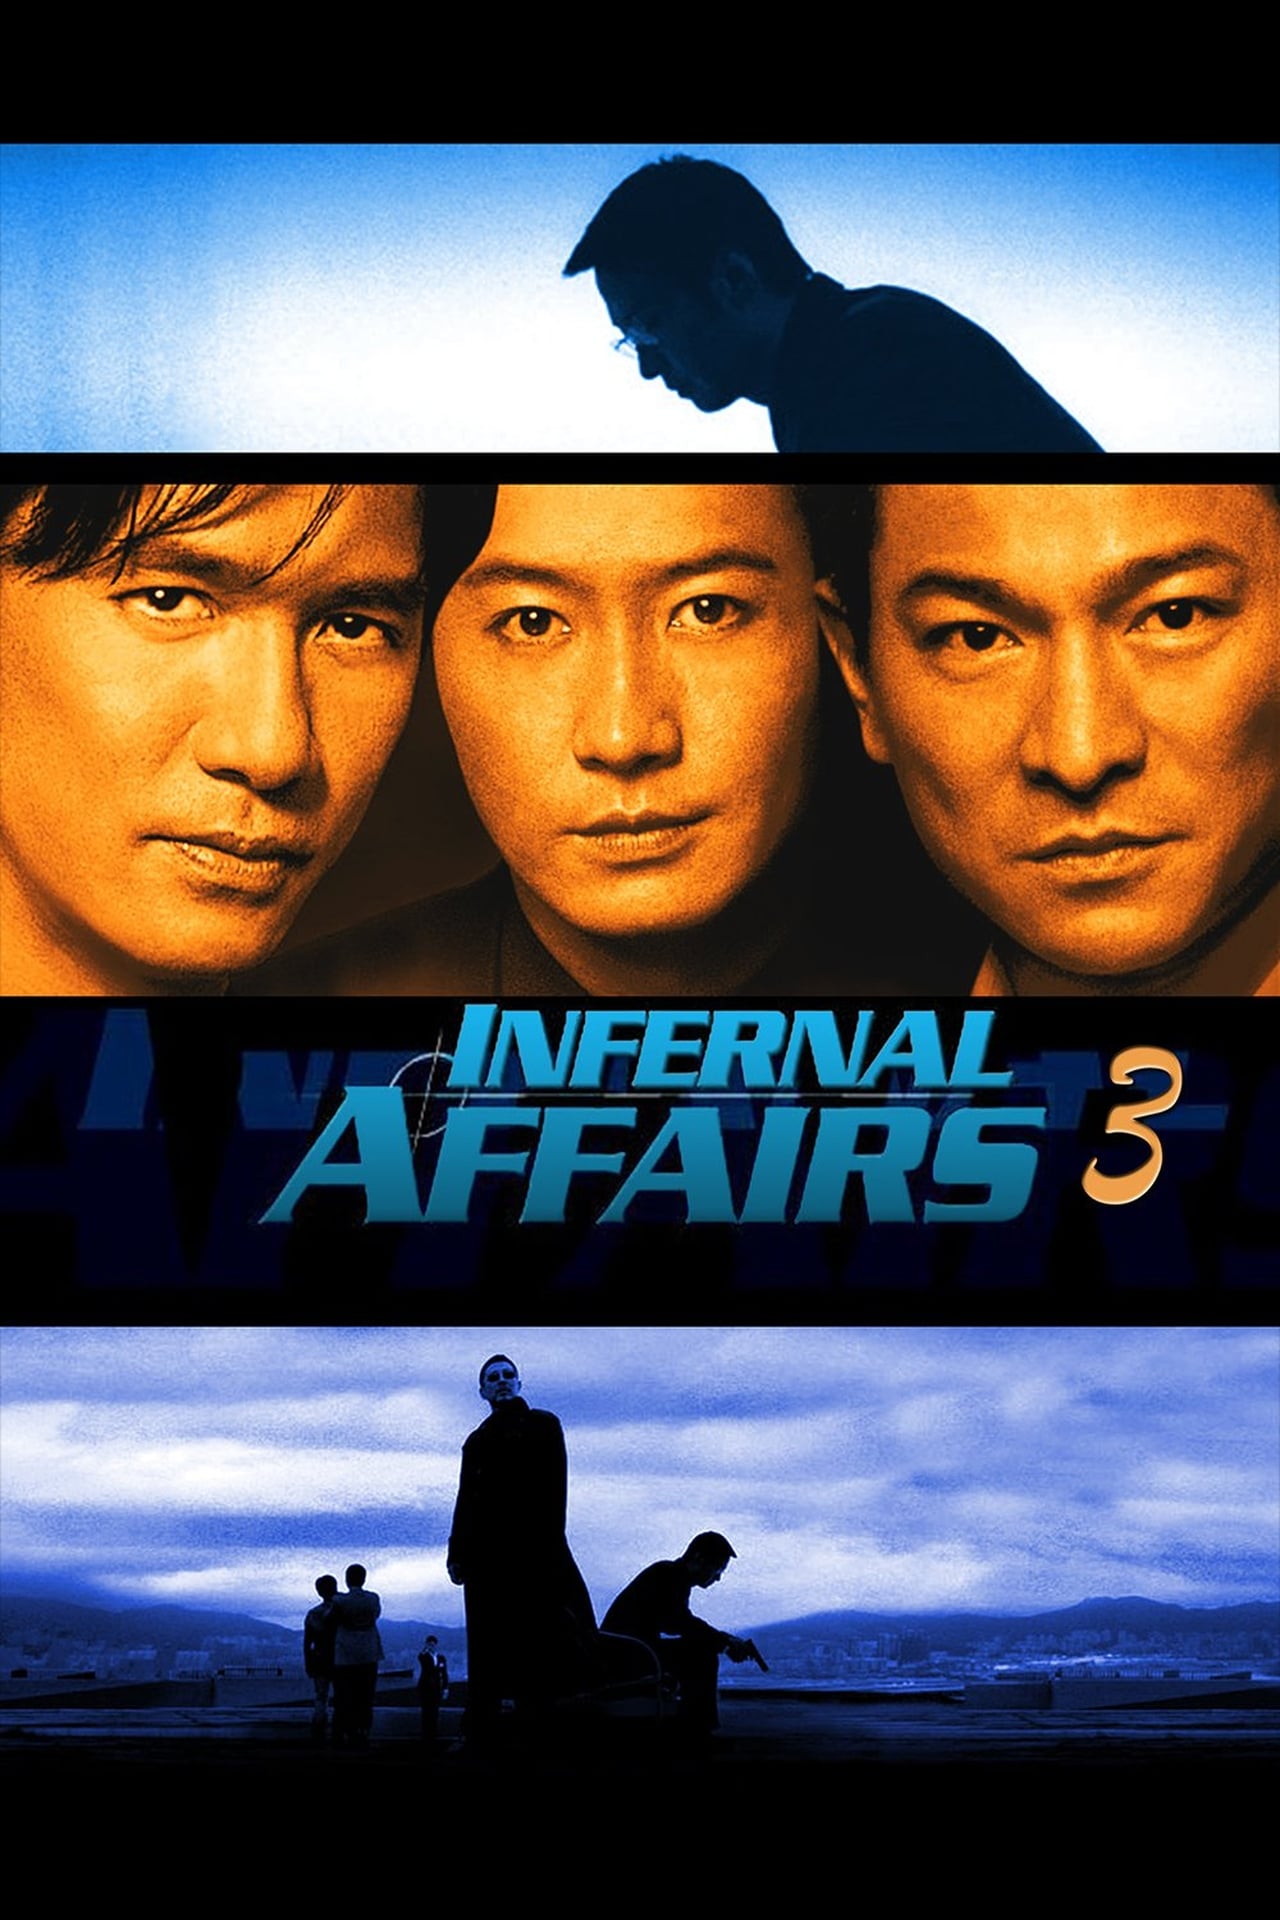 Infernal Affairs III (2003) 384Kbps 24Fps 48Khz 5.1Ch DVD Turkish Audio TAC